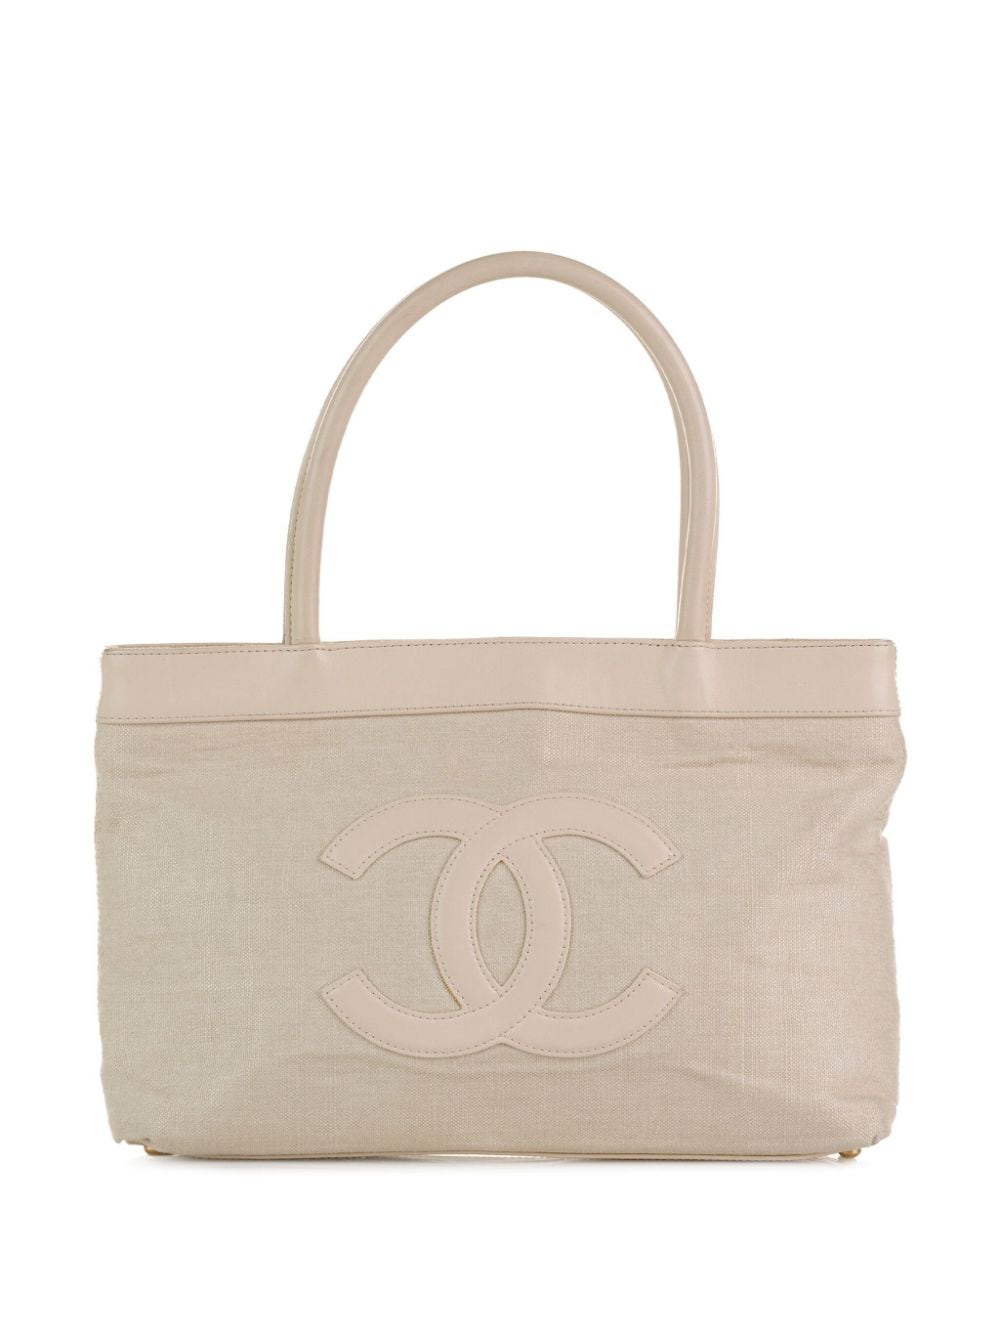 Pre-owned Chanel 2004-2005 Cc-appliqué Canvas Handbag In Neutrals